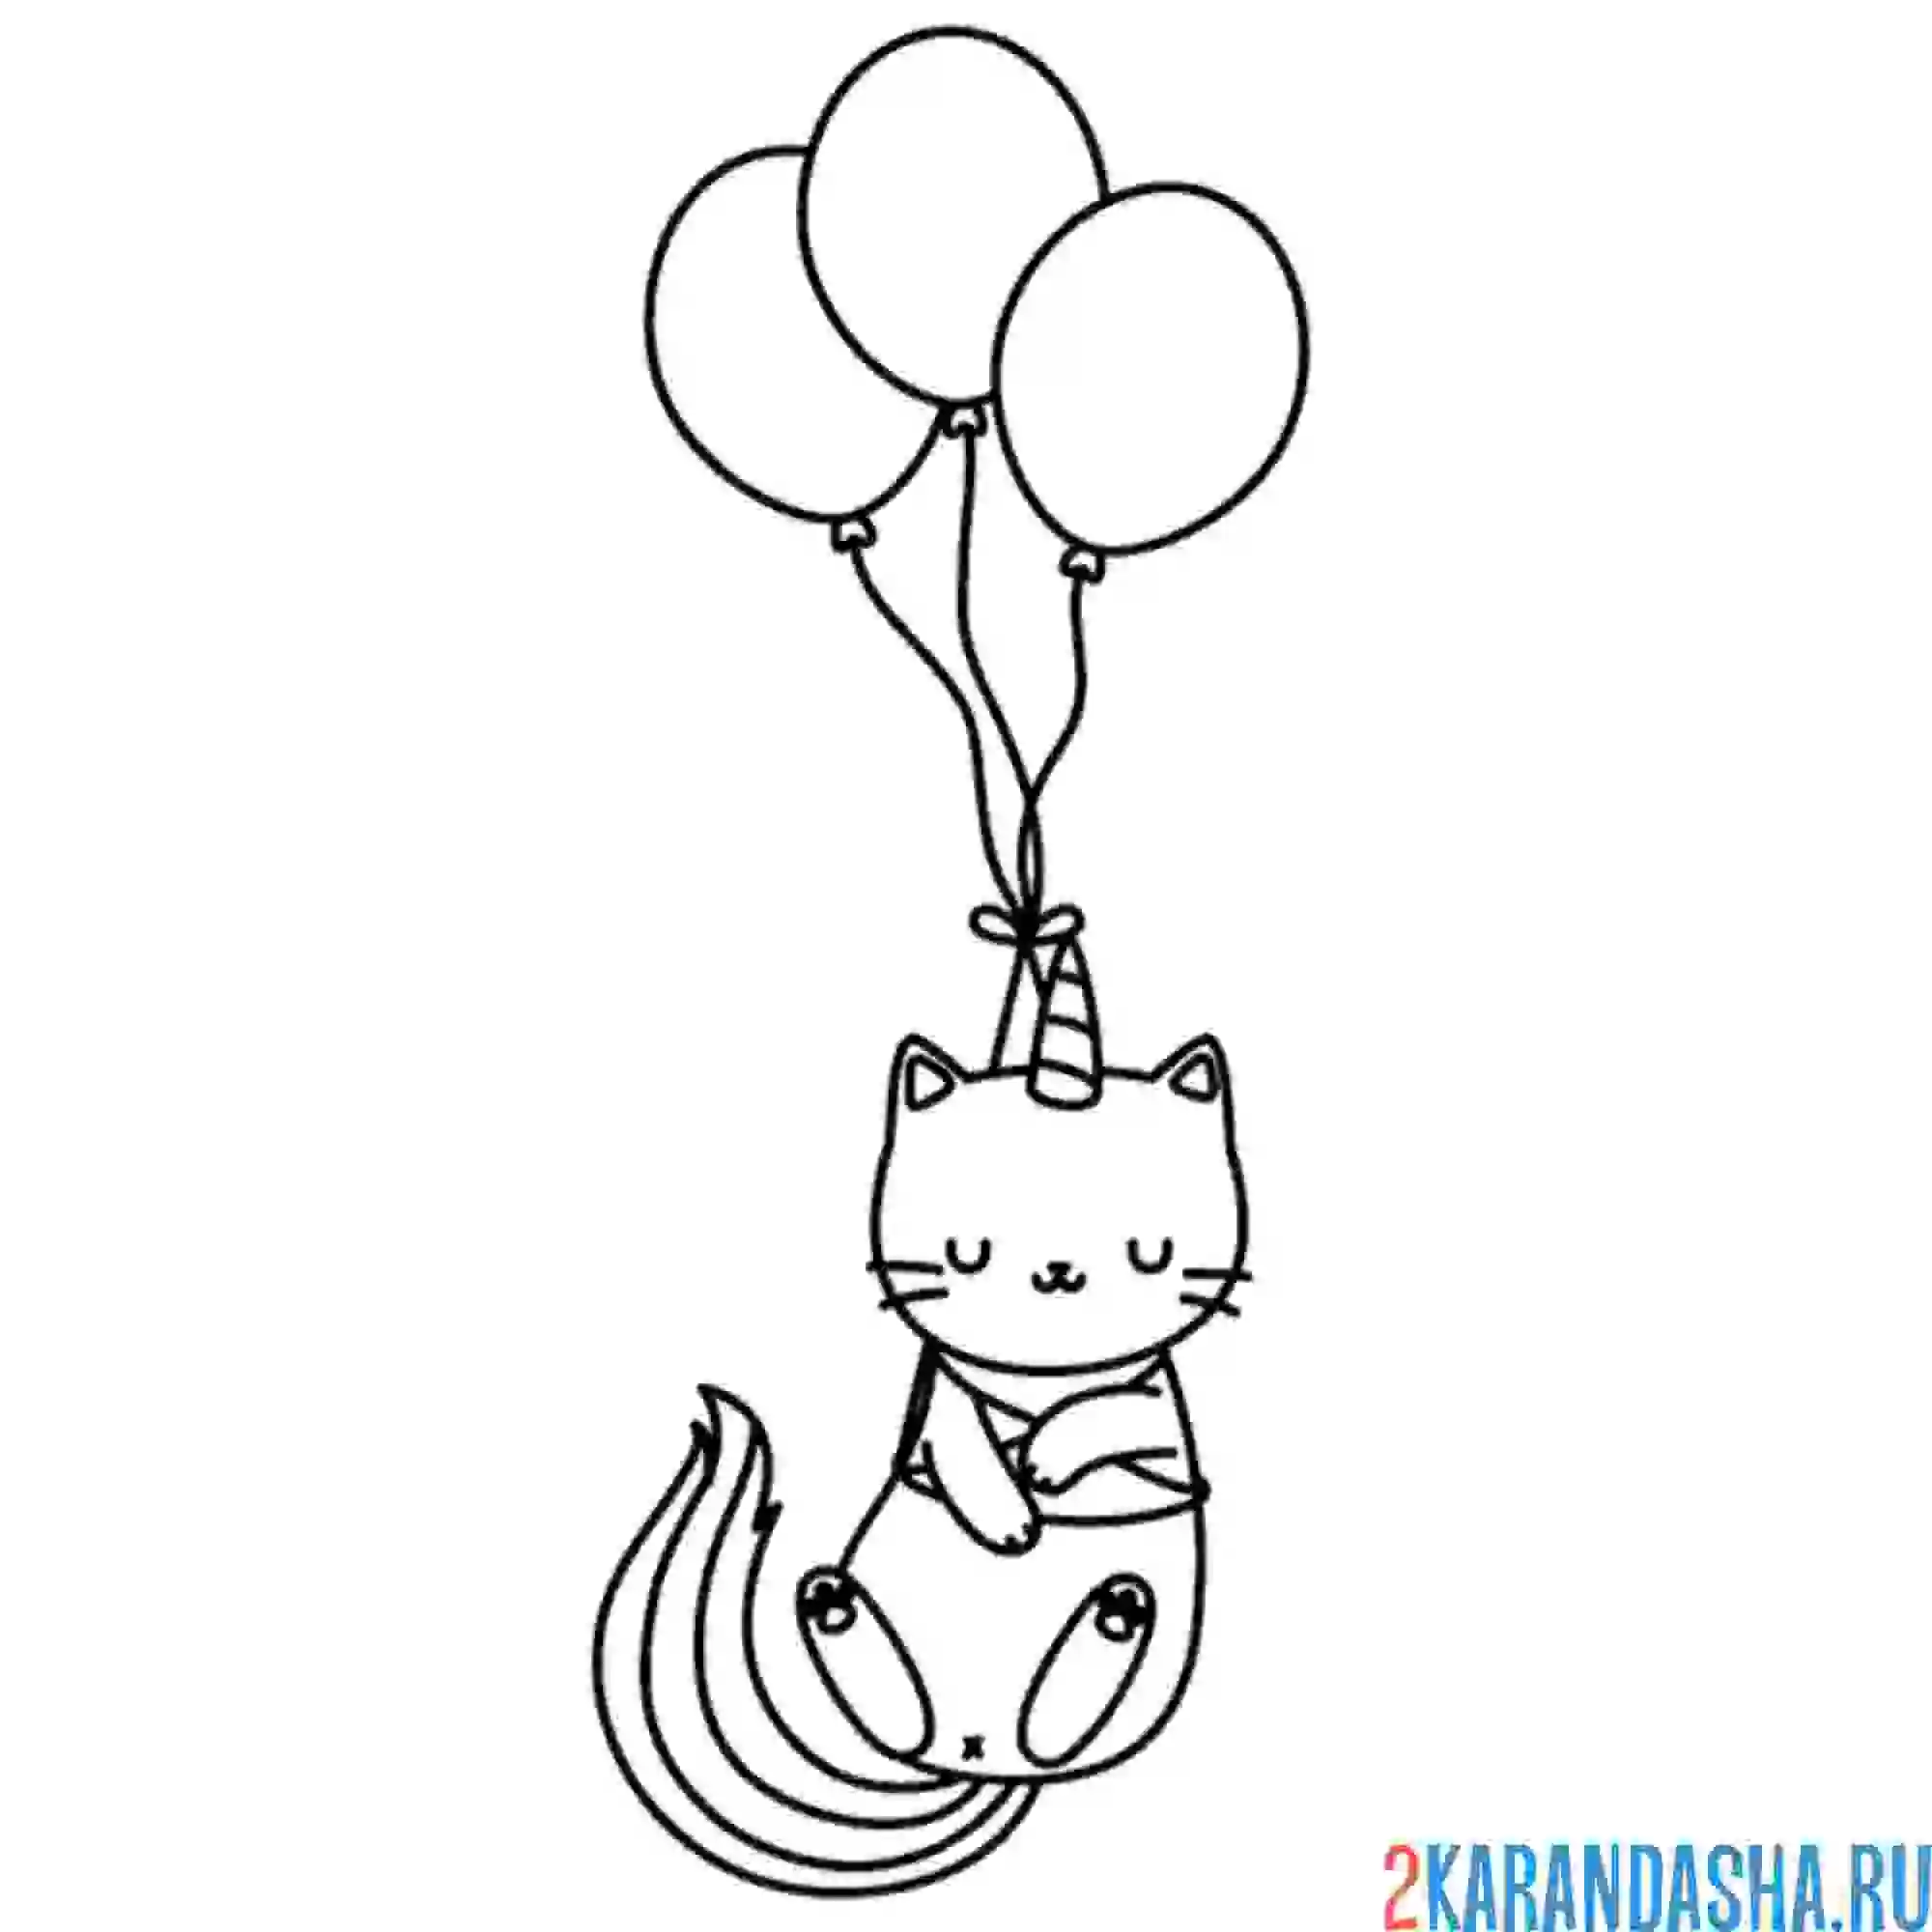 Раскраска кот-единорог на воздушных шарах